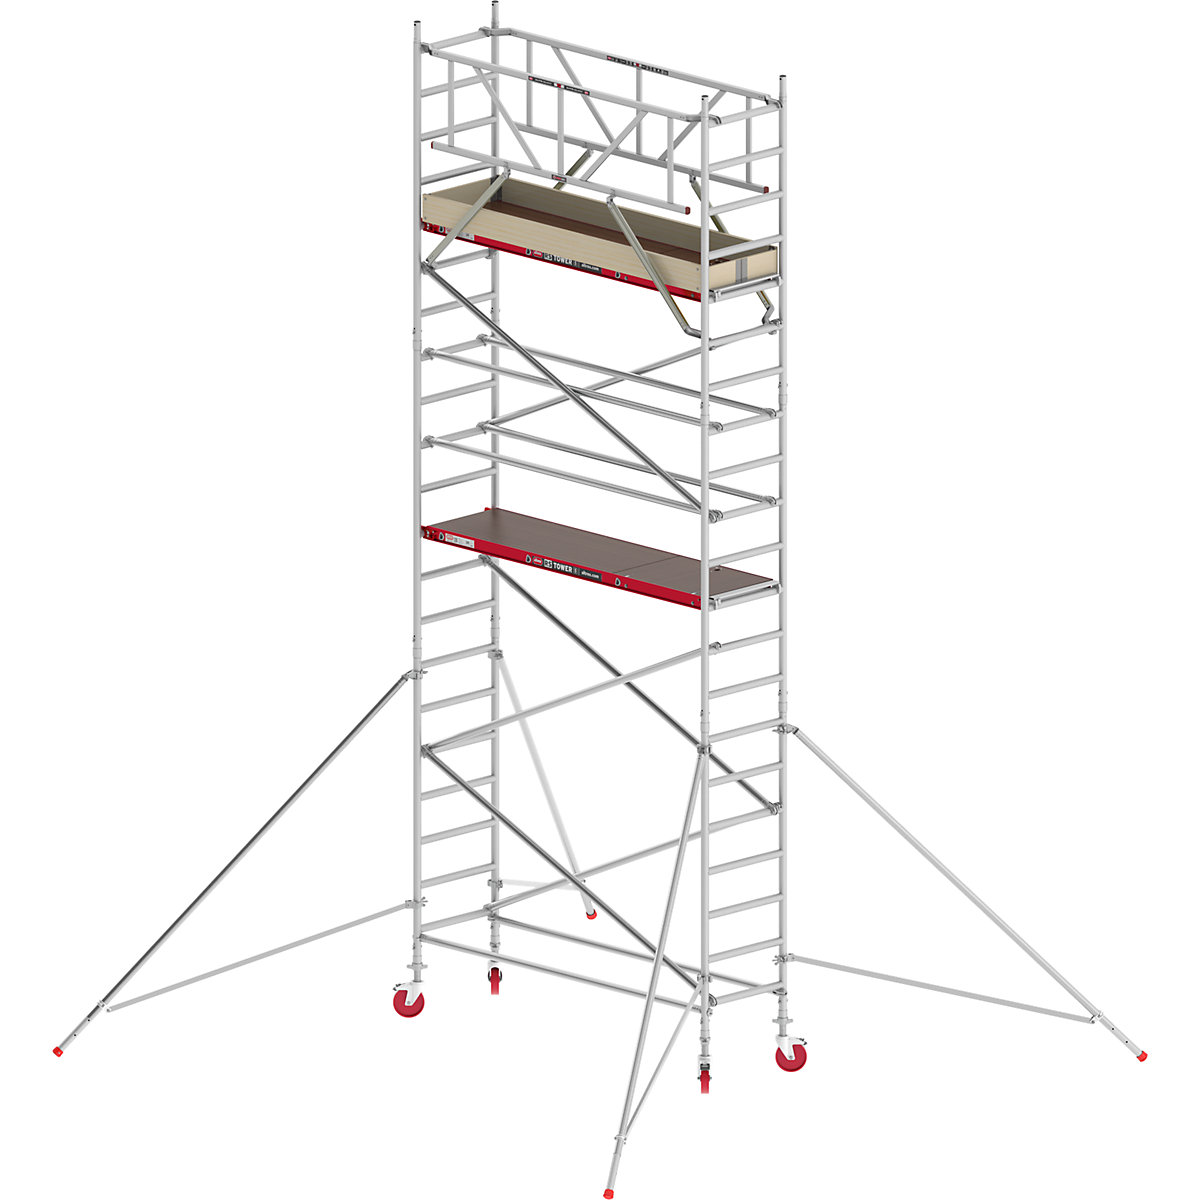 Uska pomična skela RS TOWER 41 – Altrex, drvena platforma, dužina 1,85 m, radna visina 7,20 m-3